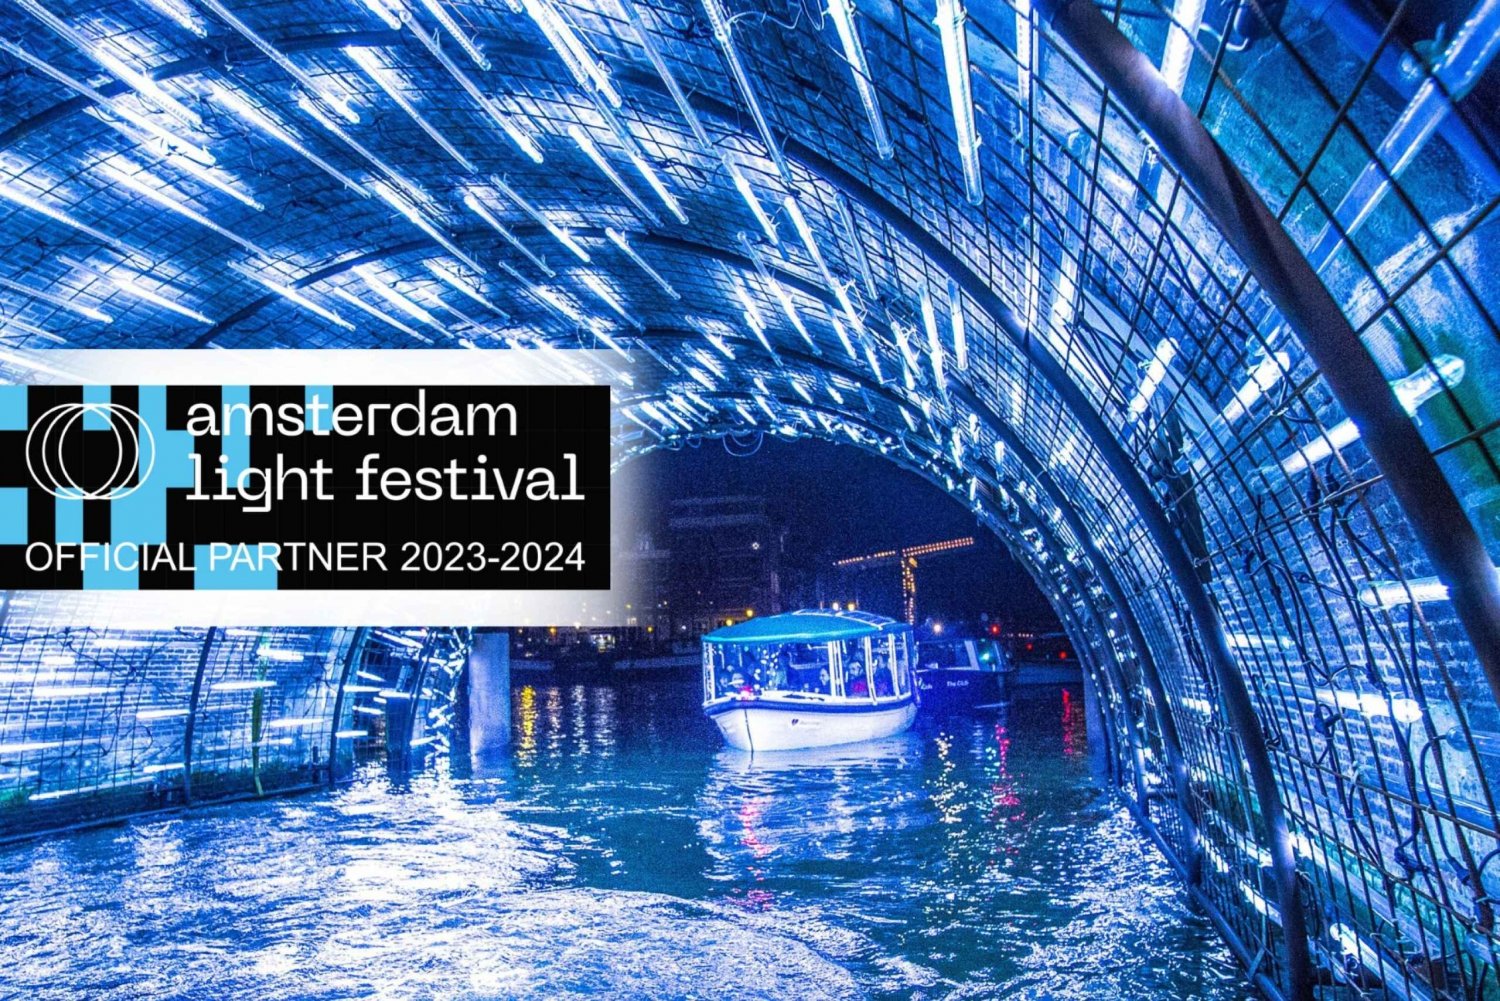 Amsterdã: Cruzeiro de luxo para o Festival da Luz com bebidas opcionais